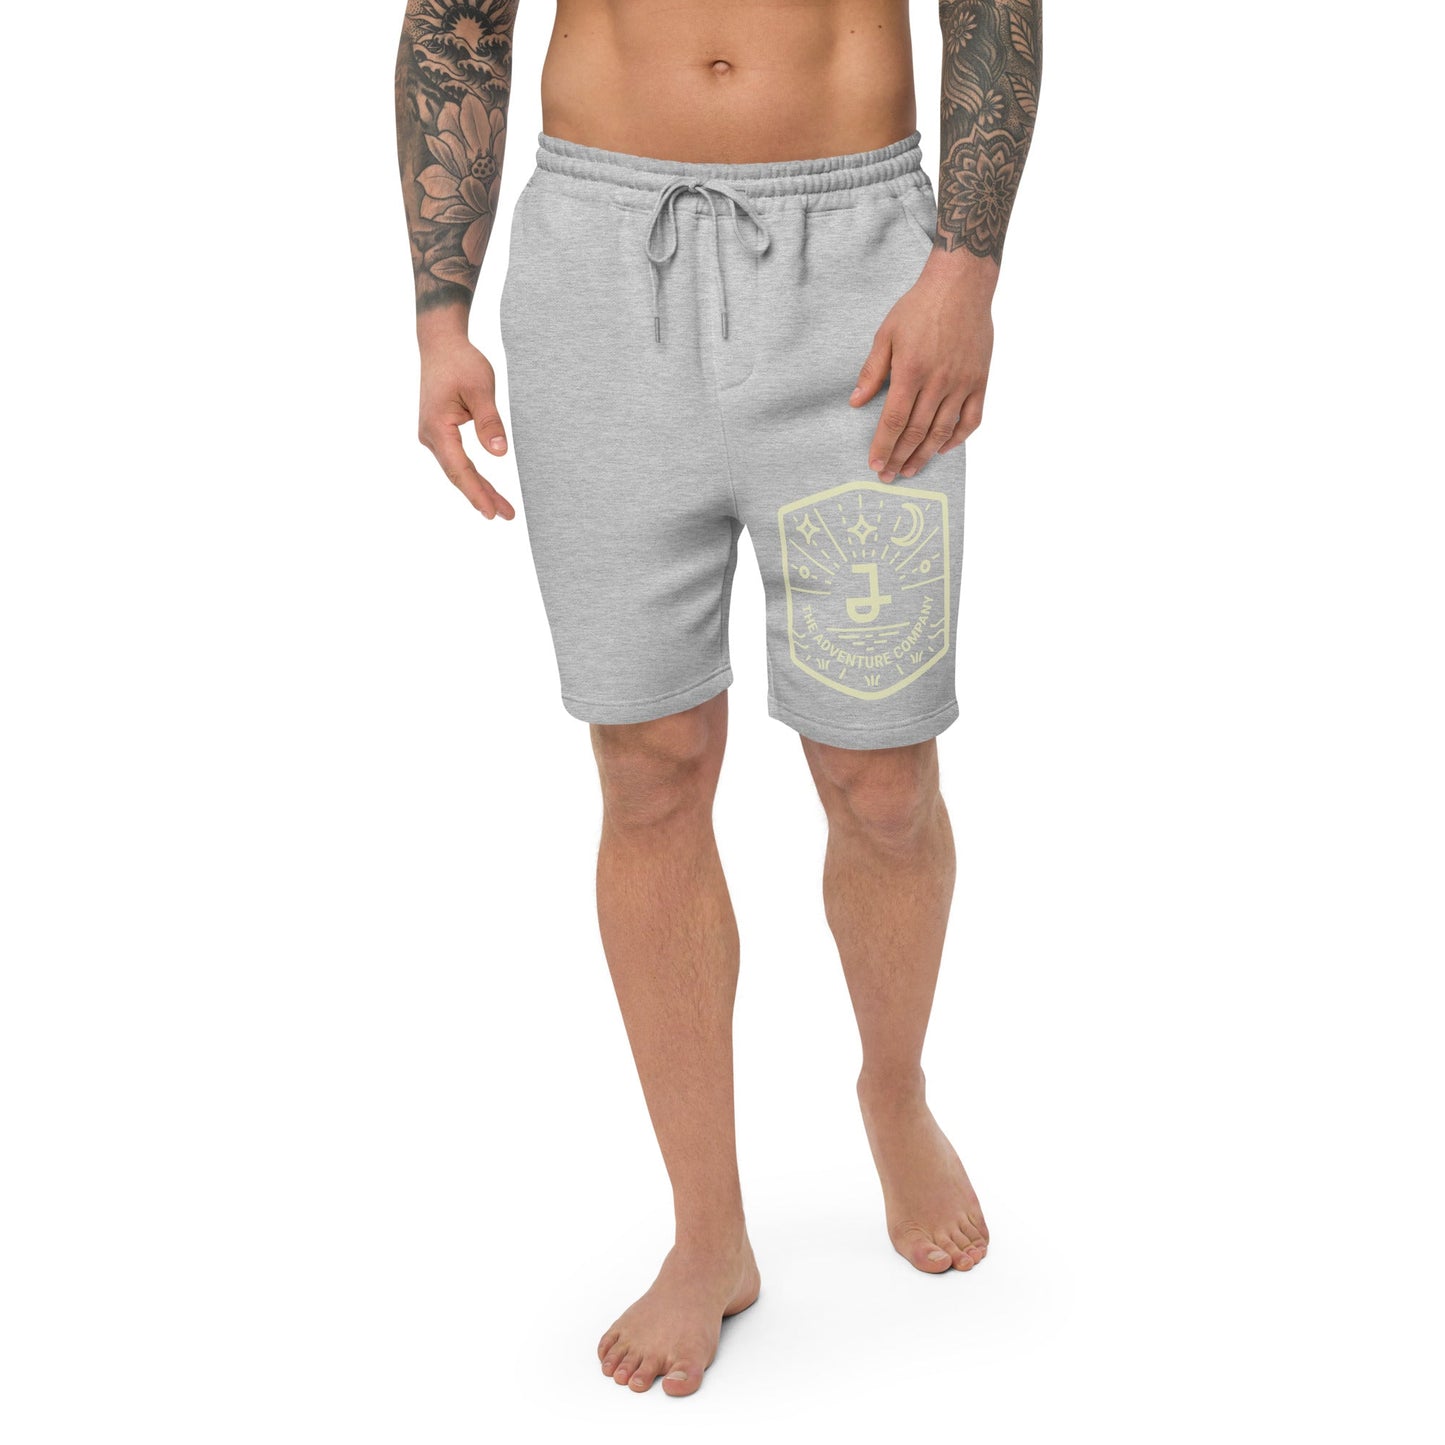 JordiLight - Men's fleece shorts